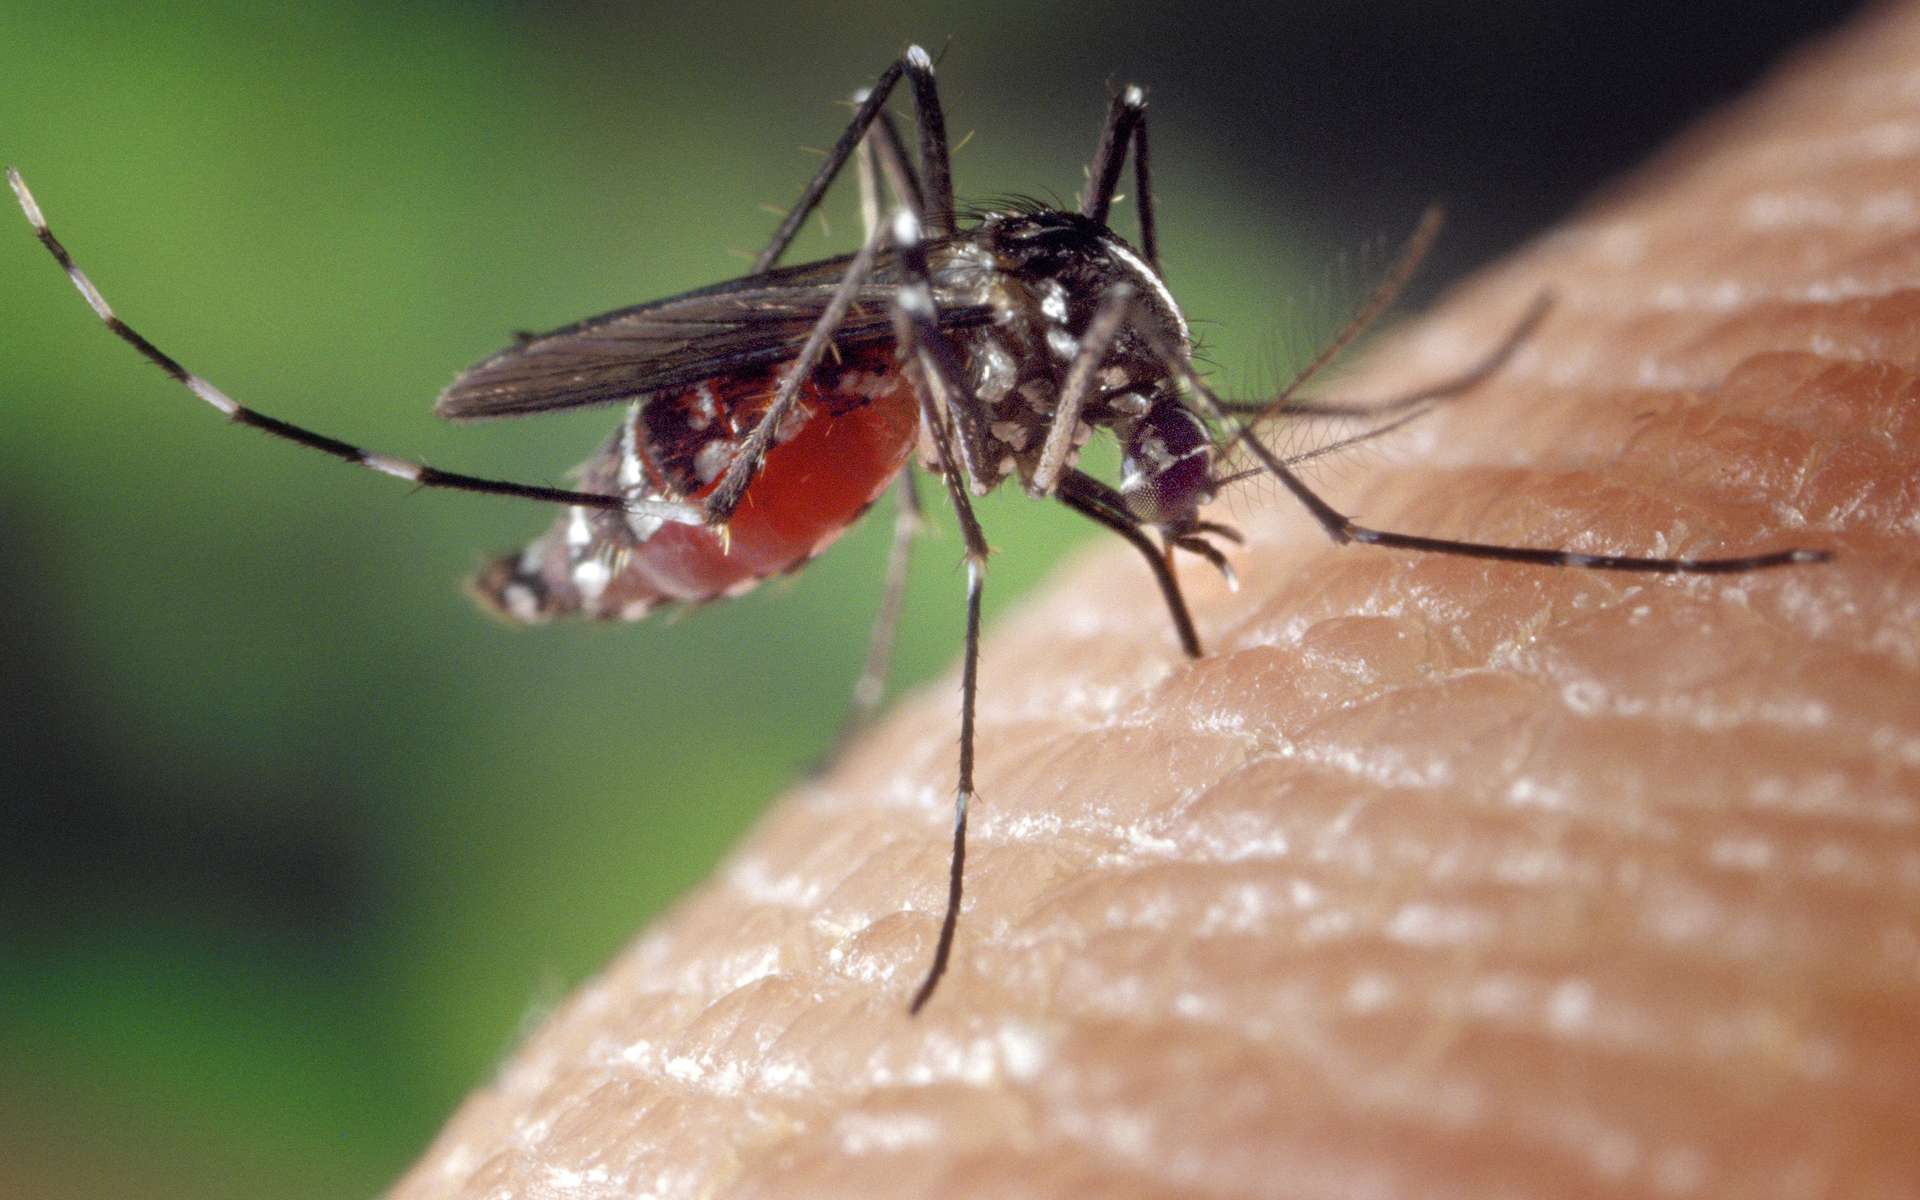 Le moustique-tigre (Aedes albopictus) présent dans le Var serait responsable de la première contamination du chikungunya en France métropolitaine. © James Gathany - Centers for Disease Control and Prevention (domaine public)